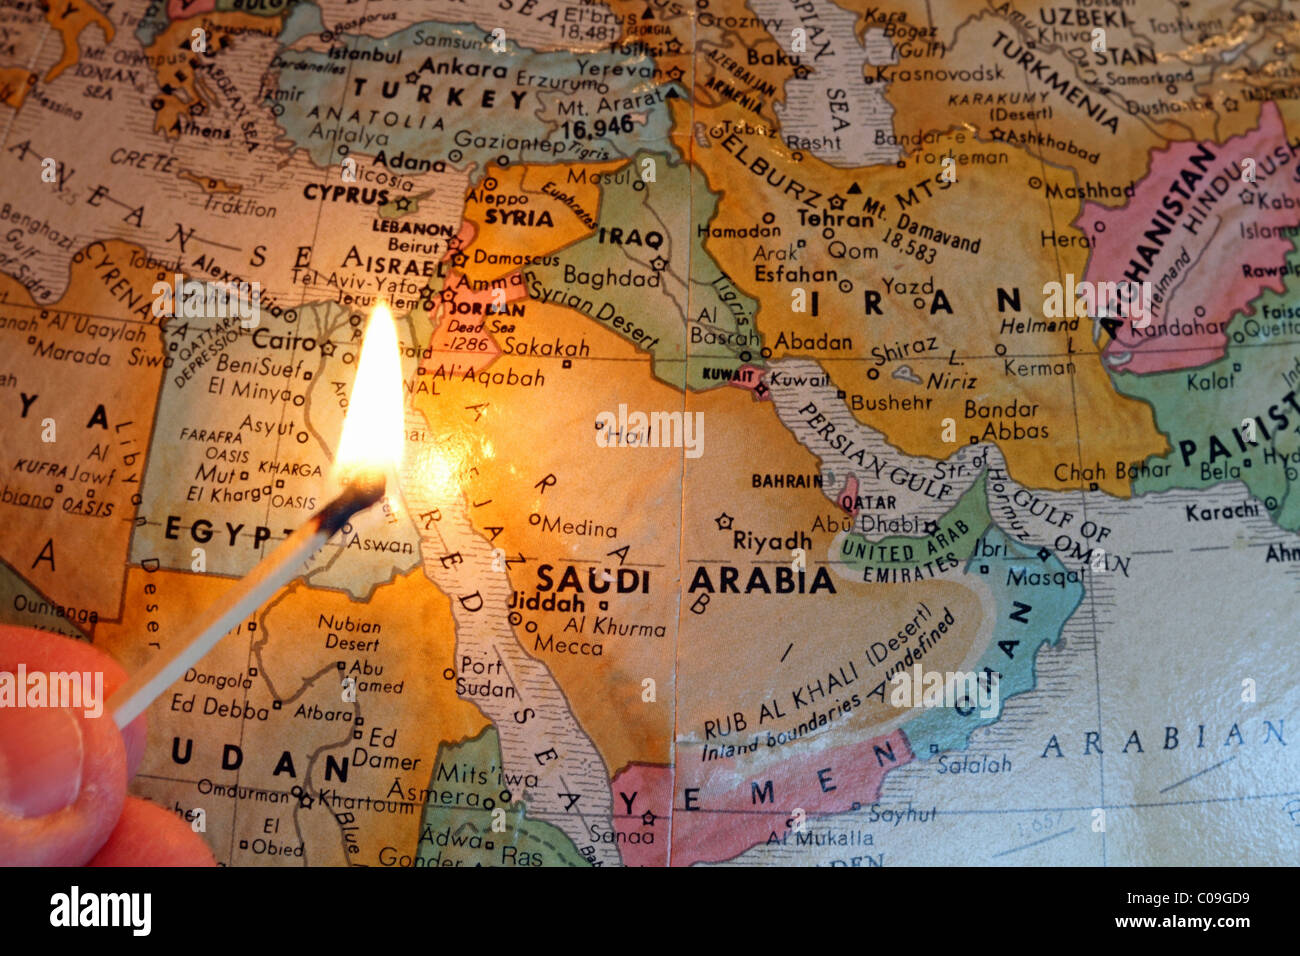 Carte du Moyen-Orient avec un match allumé symbolisant les troubles de la région en matière de social, religieux et politiques. Banque D'Images